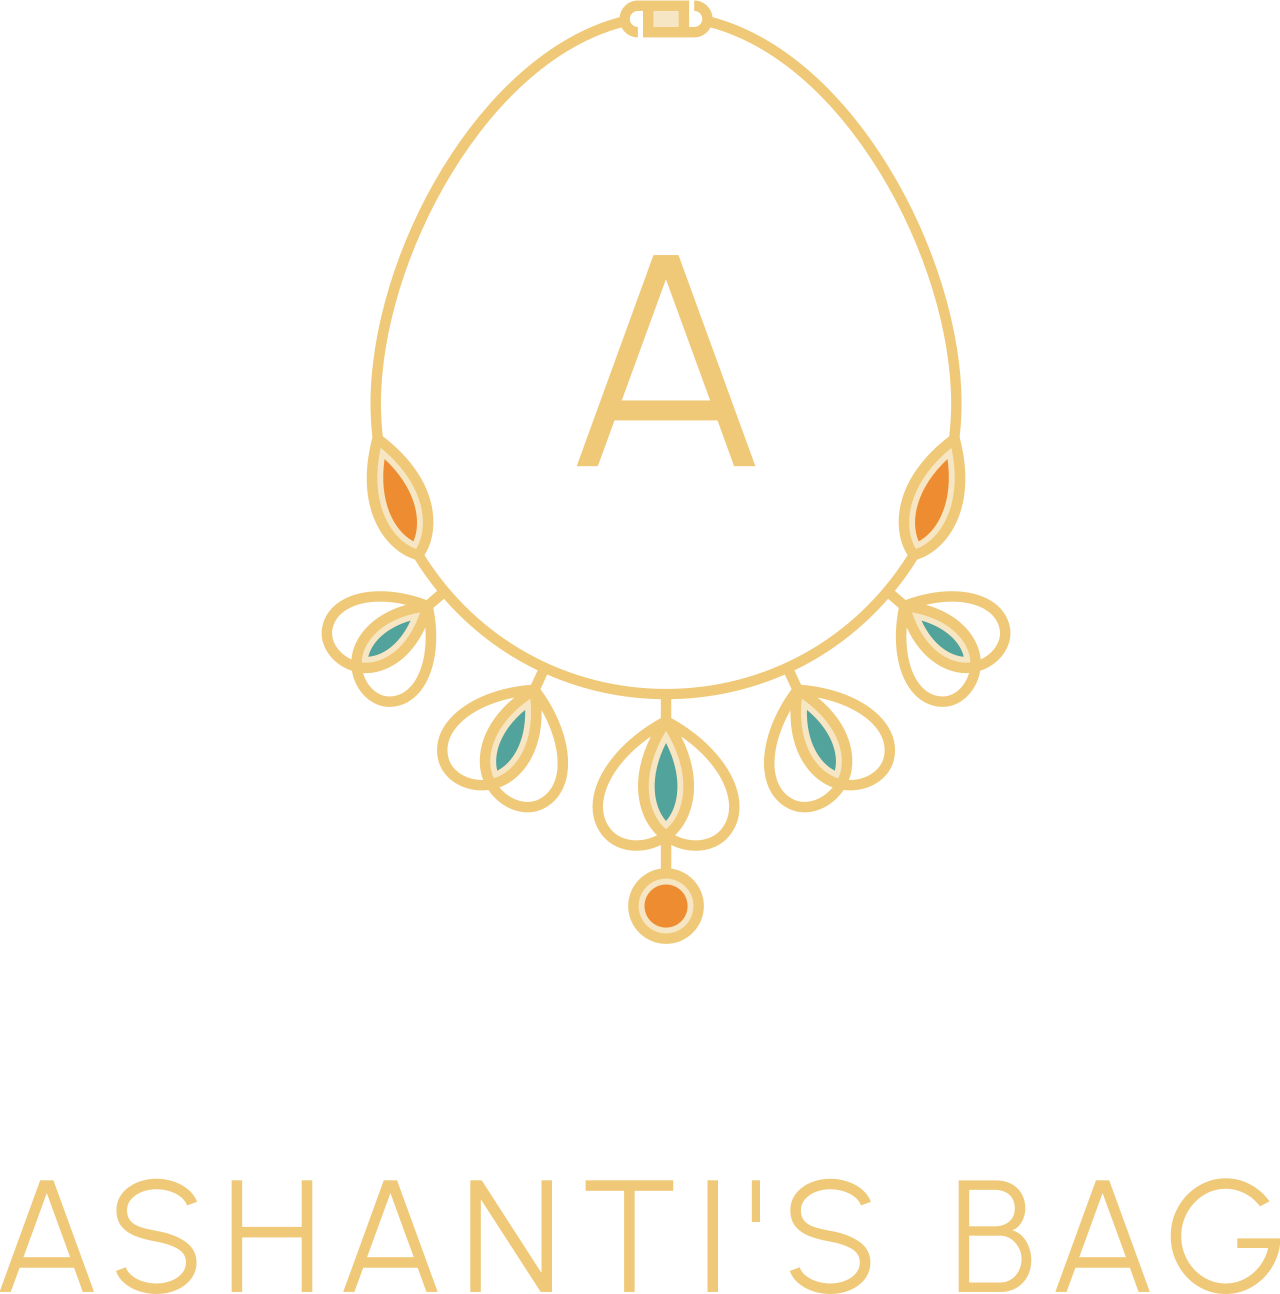 Ashanti's Bag 's web page